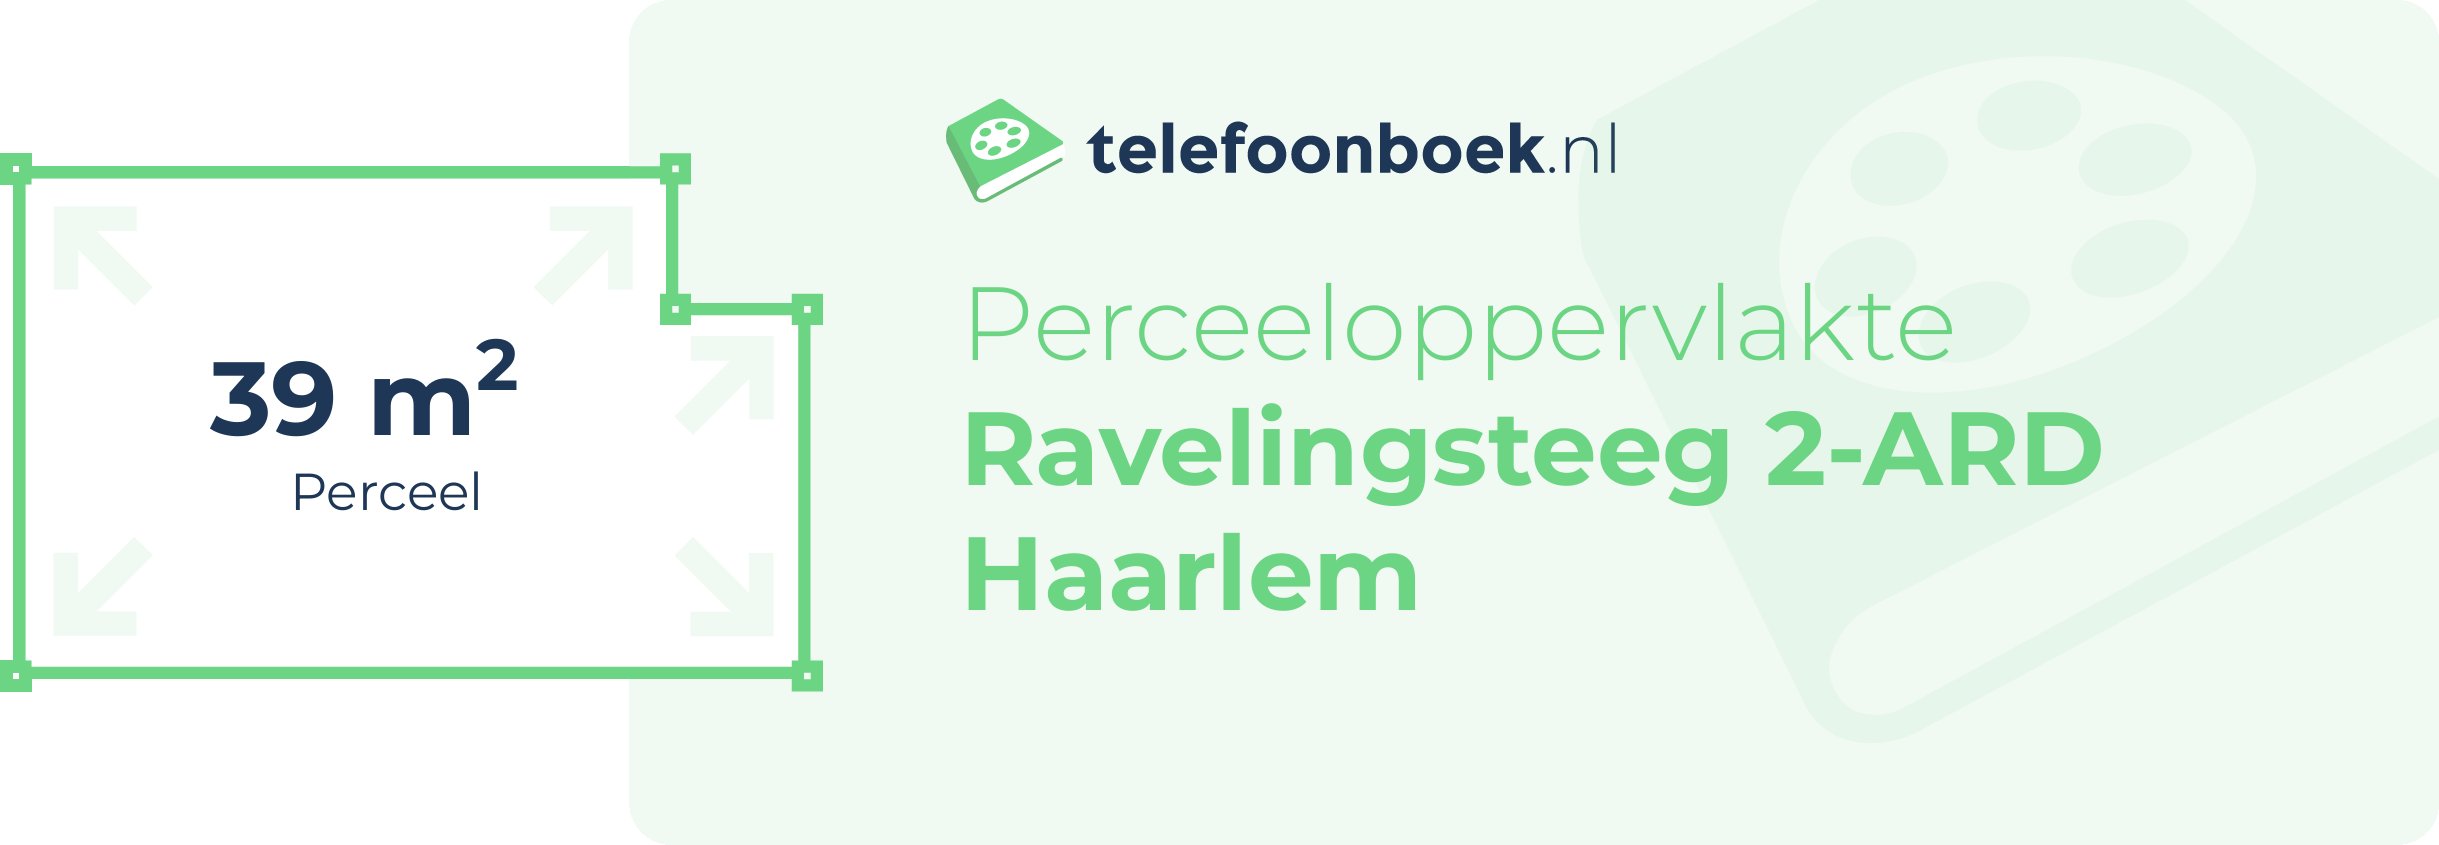 Perceeloppervlakte Ravelingsteeg 2-ARD Haarlem